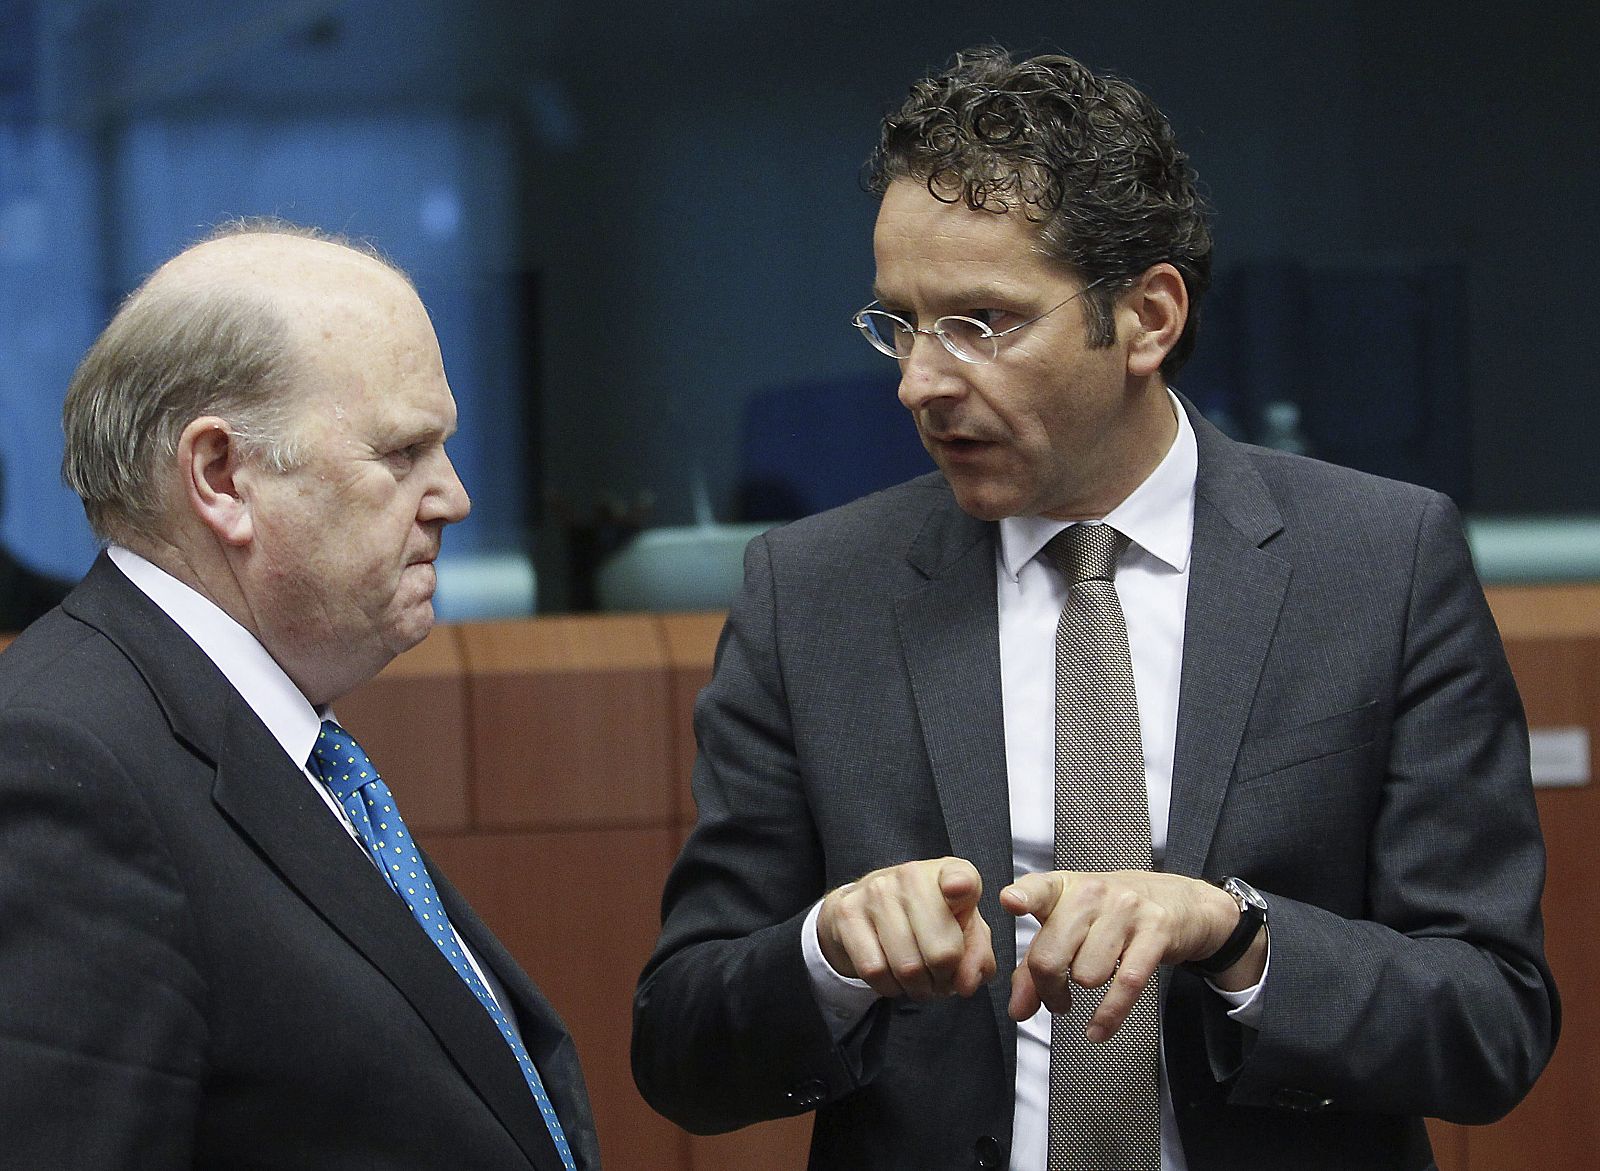 El presidente del Eurogrupo y ministro holandés de Finanzas, Jeroen Dijsselbloem, conversa con el ministro irlandés de Finanzas, Michael Noonan